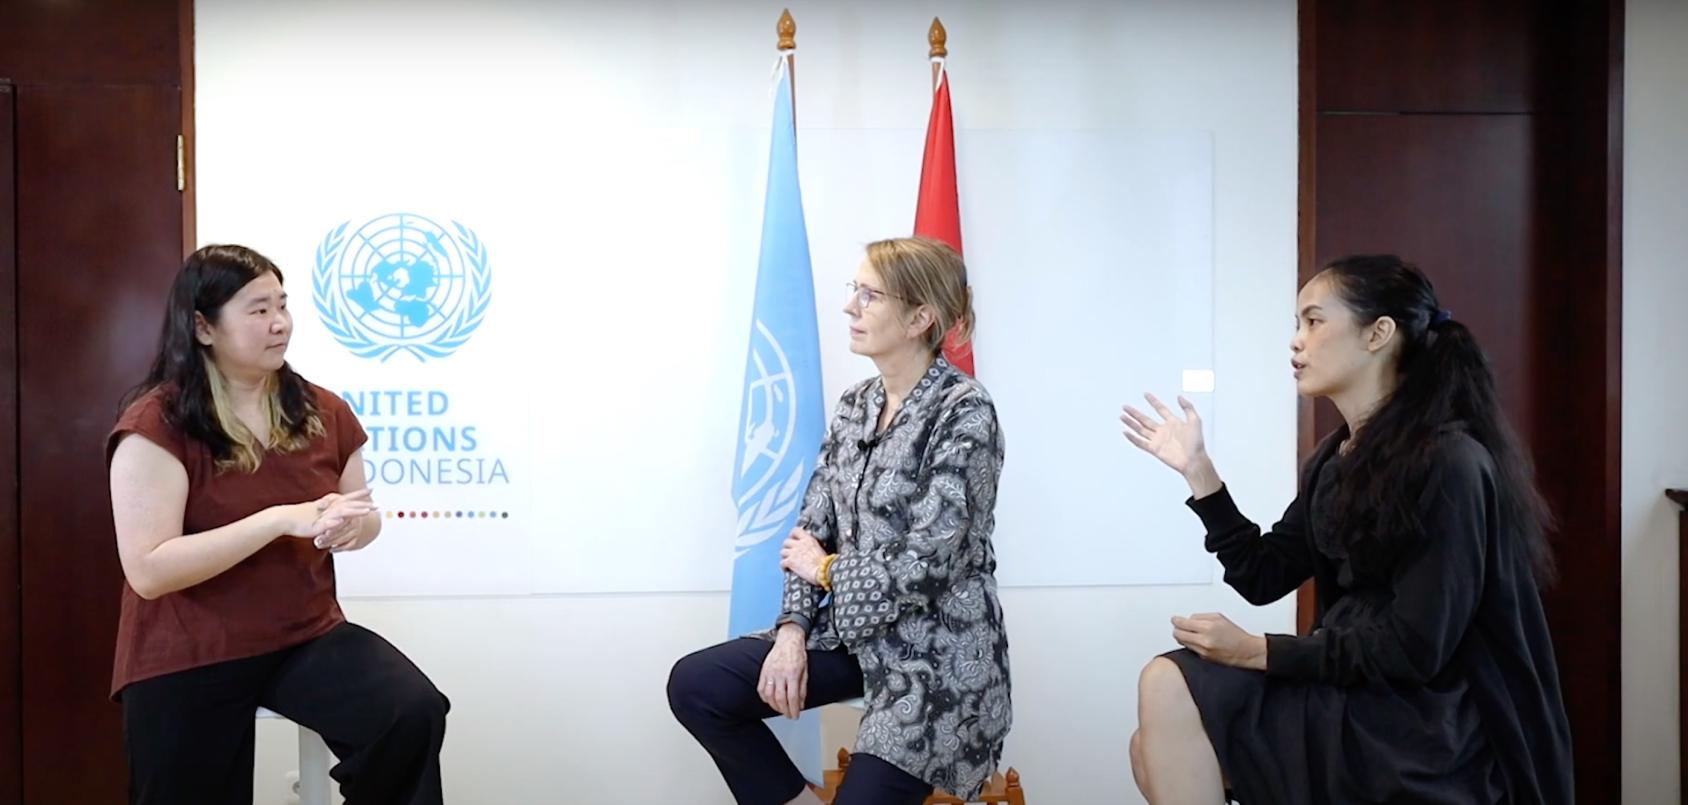 تجري ثلاث نساء مناقشة وهن يجلسن أمام الأعلام وشعار الأمم المتحدة.